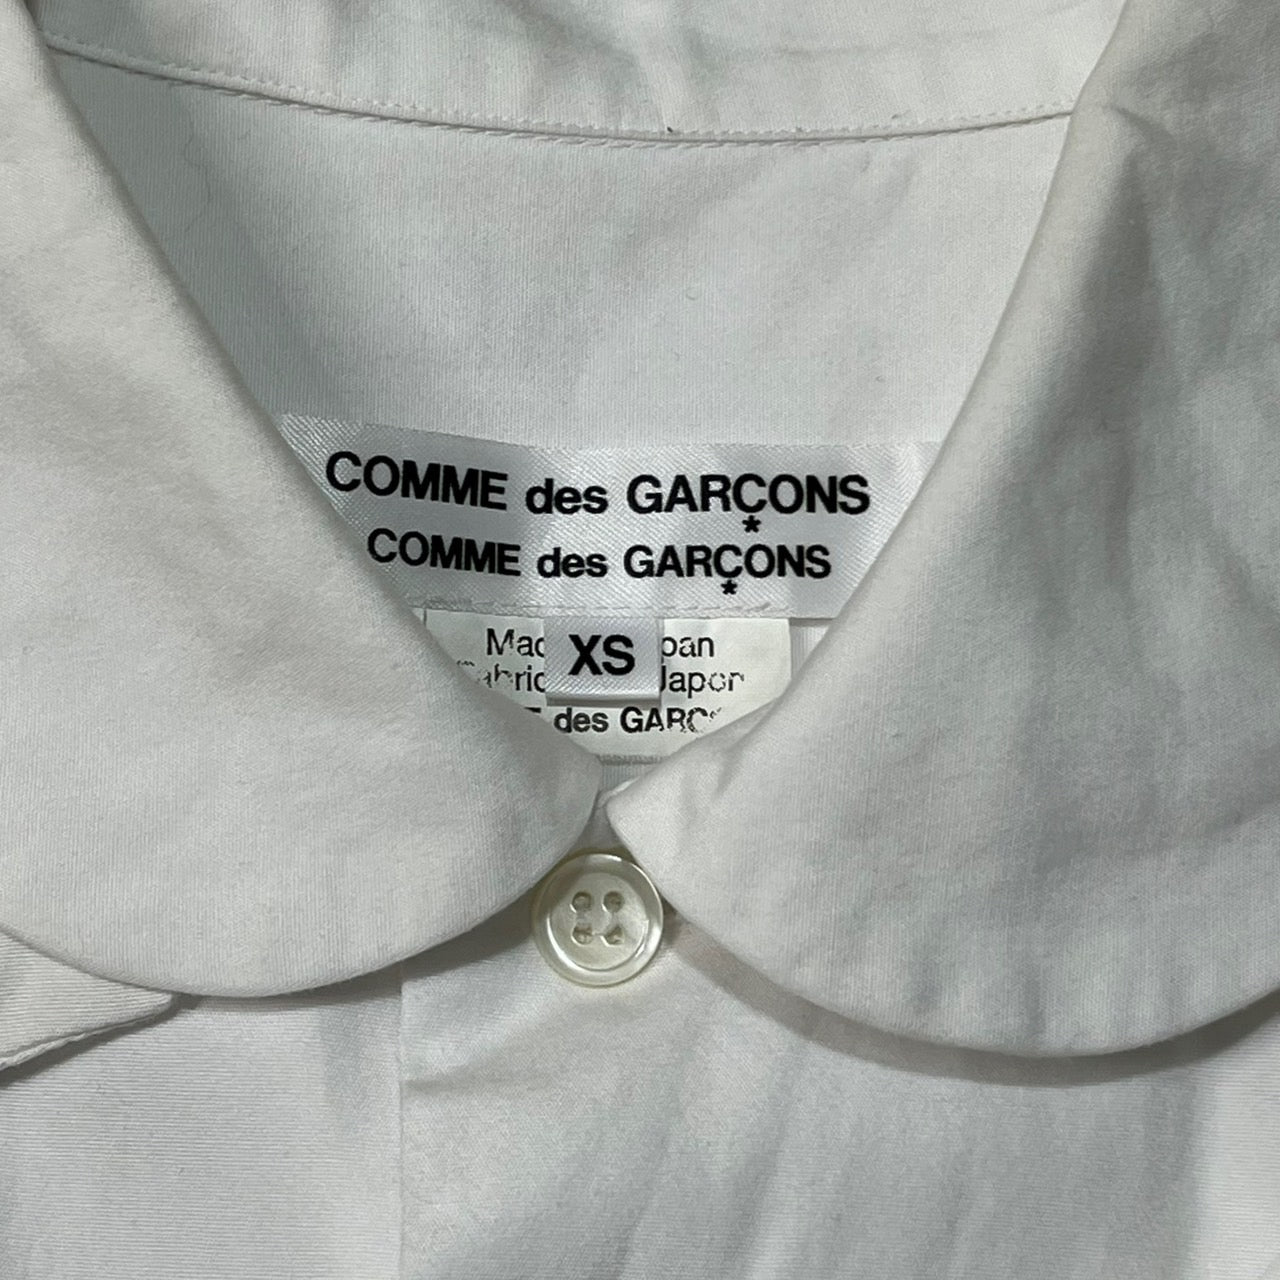 COMME des GARCONS COMME des GARCONS(コムデギャルソン